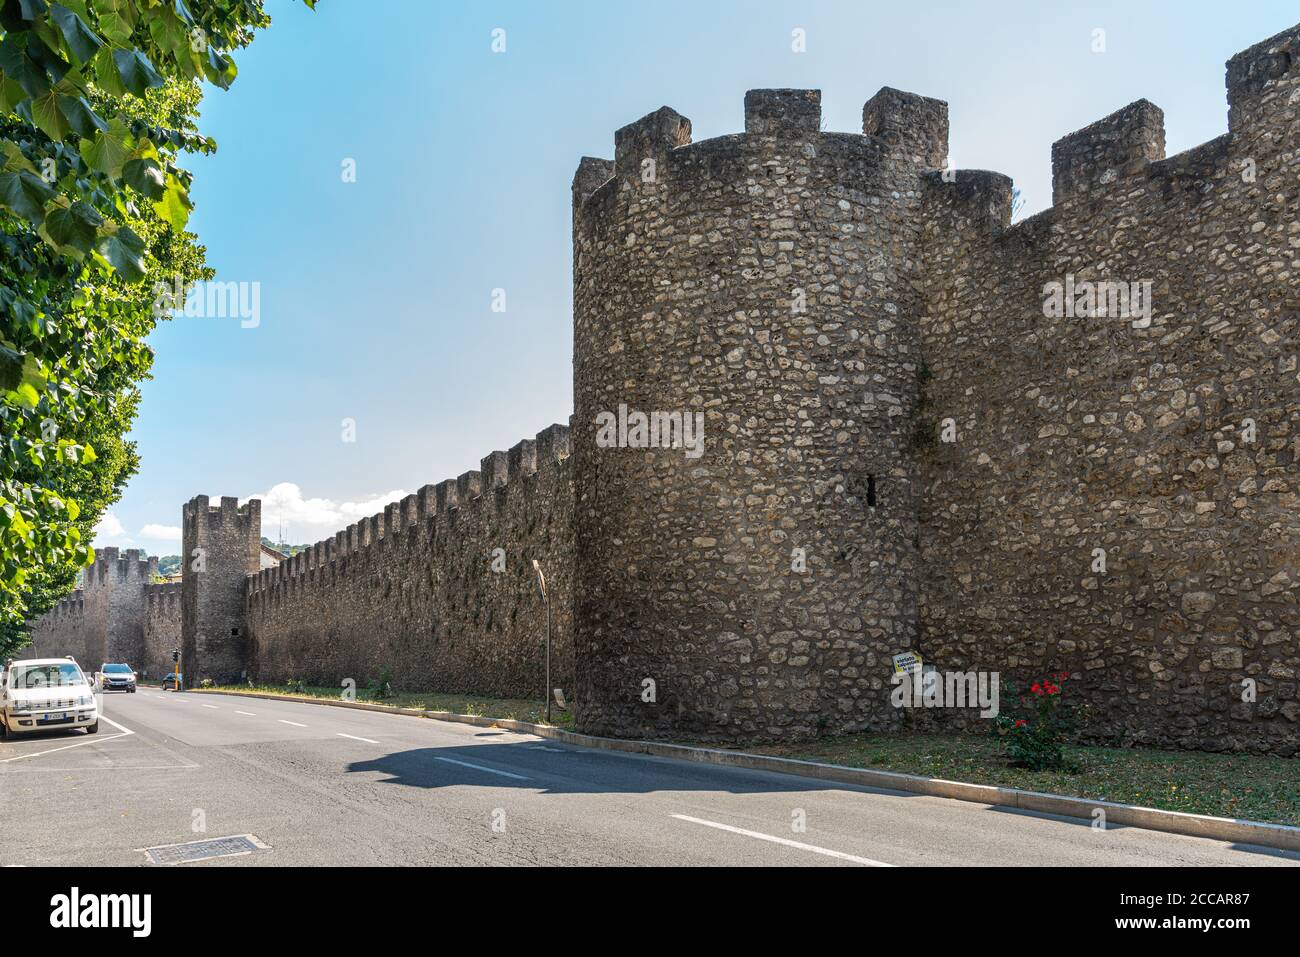 Die mittelalterlichen Mauern von Rieti verteidigten und umgaben die Stadt. Rieti, Region Latium, Italien, Europa Stockfoto